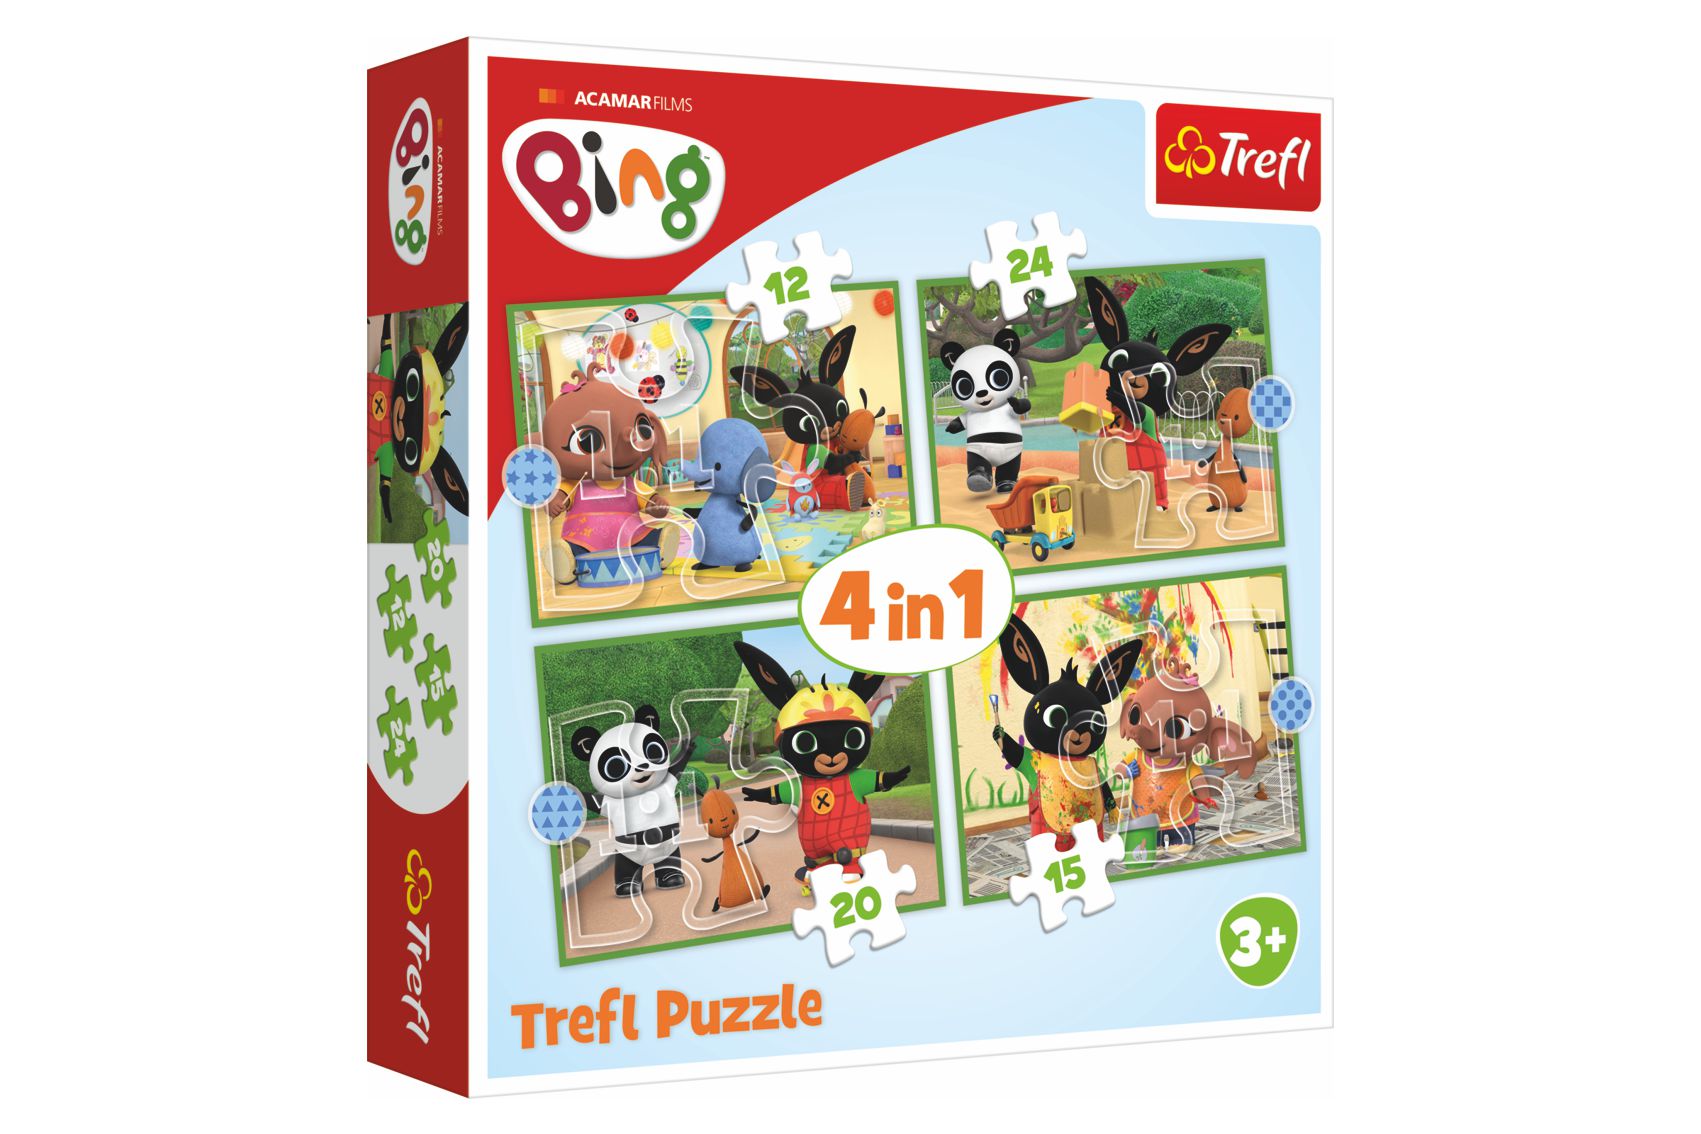 Trefl Puzzle 4v1 Bingův šťastný den 28,5x20,5cm v krabici 28x28x6cm